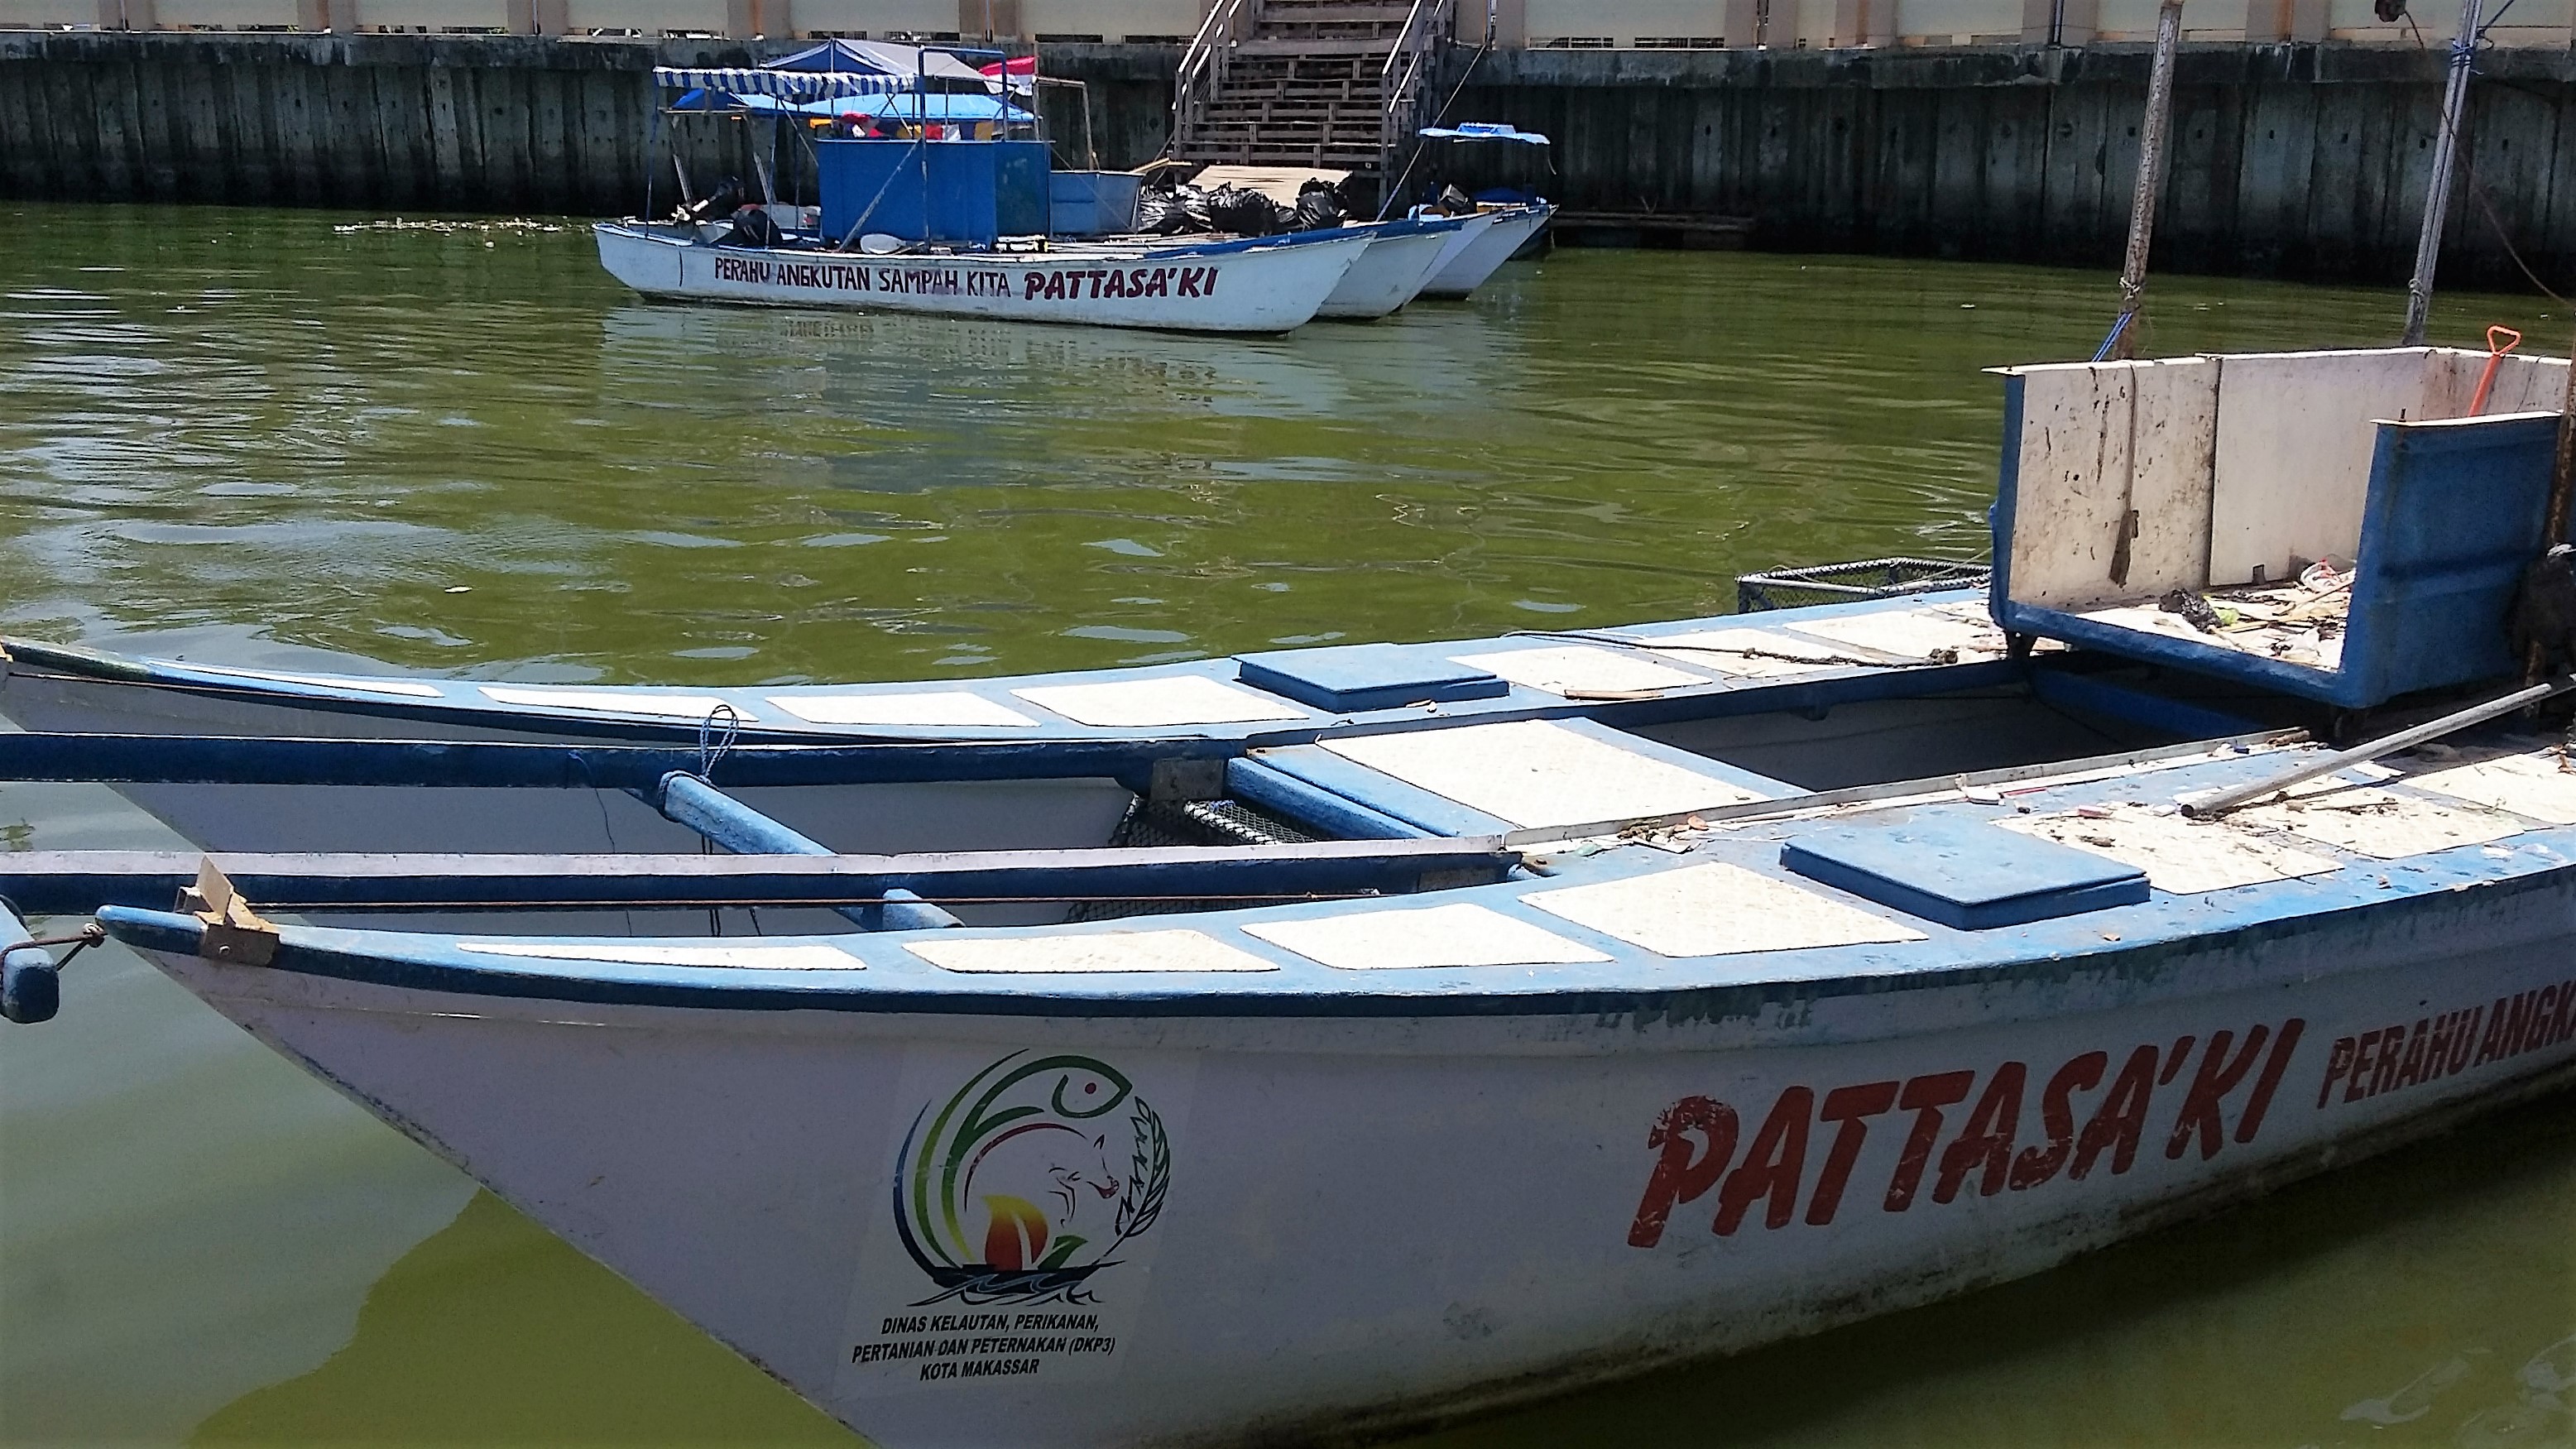 Pemkot Makassar, Sulsel menyiapkan 3 unit armada perahu yang disebut Pattasa’ki, namun jumlah armada ini belum cukup efektif menyelesaikan masalah sampah di pantai Losari. Foto: Wahyu Chandra